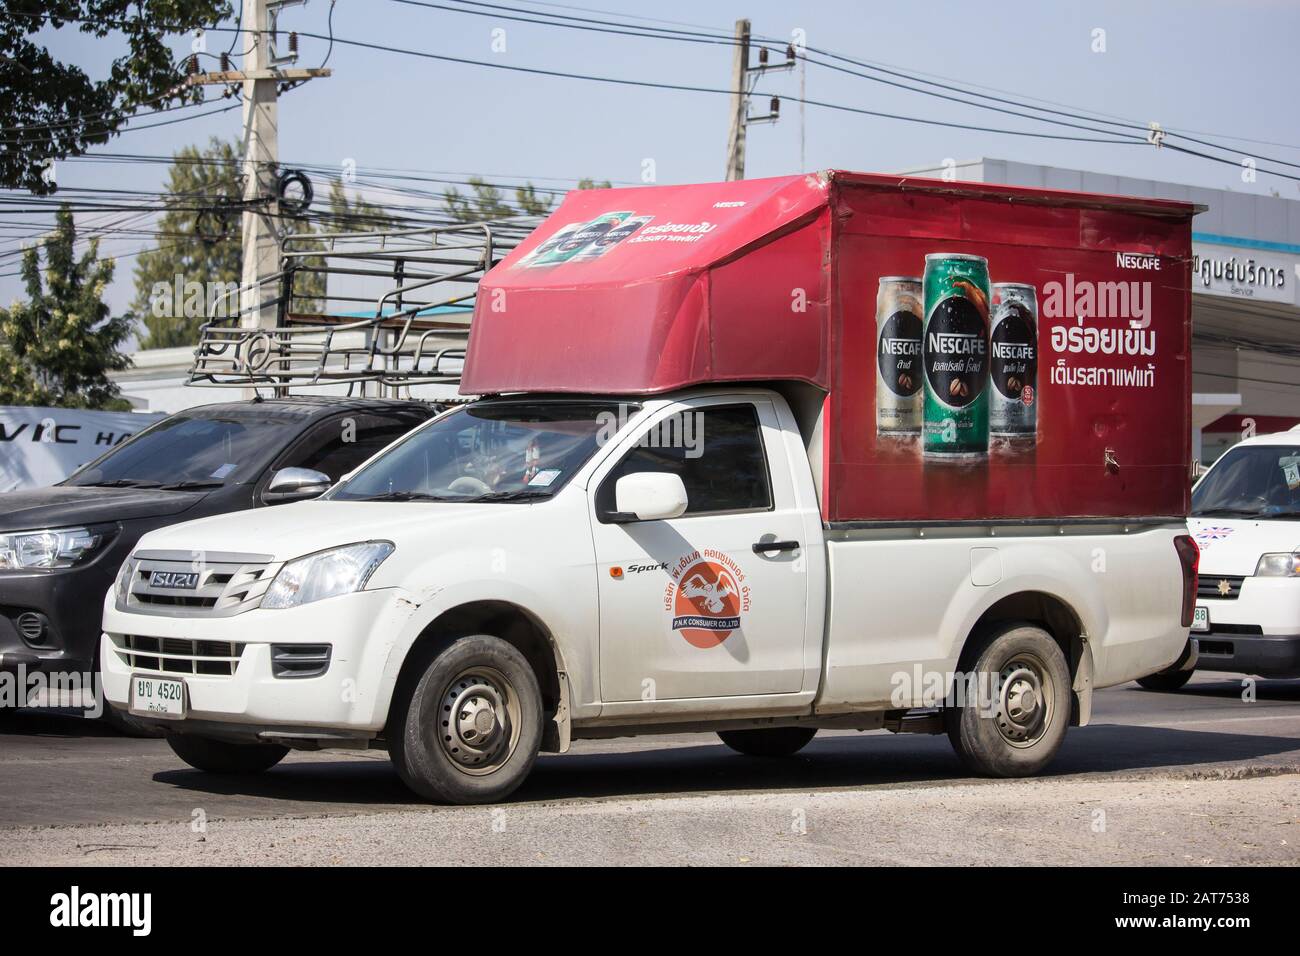 Chiangmai, Thaïlande - 7 décembre 2019: Mini-camion de conteneur de produit de lait PNK. Photo à la route no 121 à environ 8 km du centre-ville de Chiangmai, thaïlande. Banque D'Images